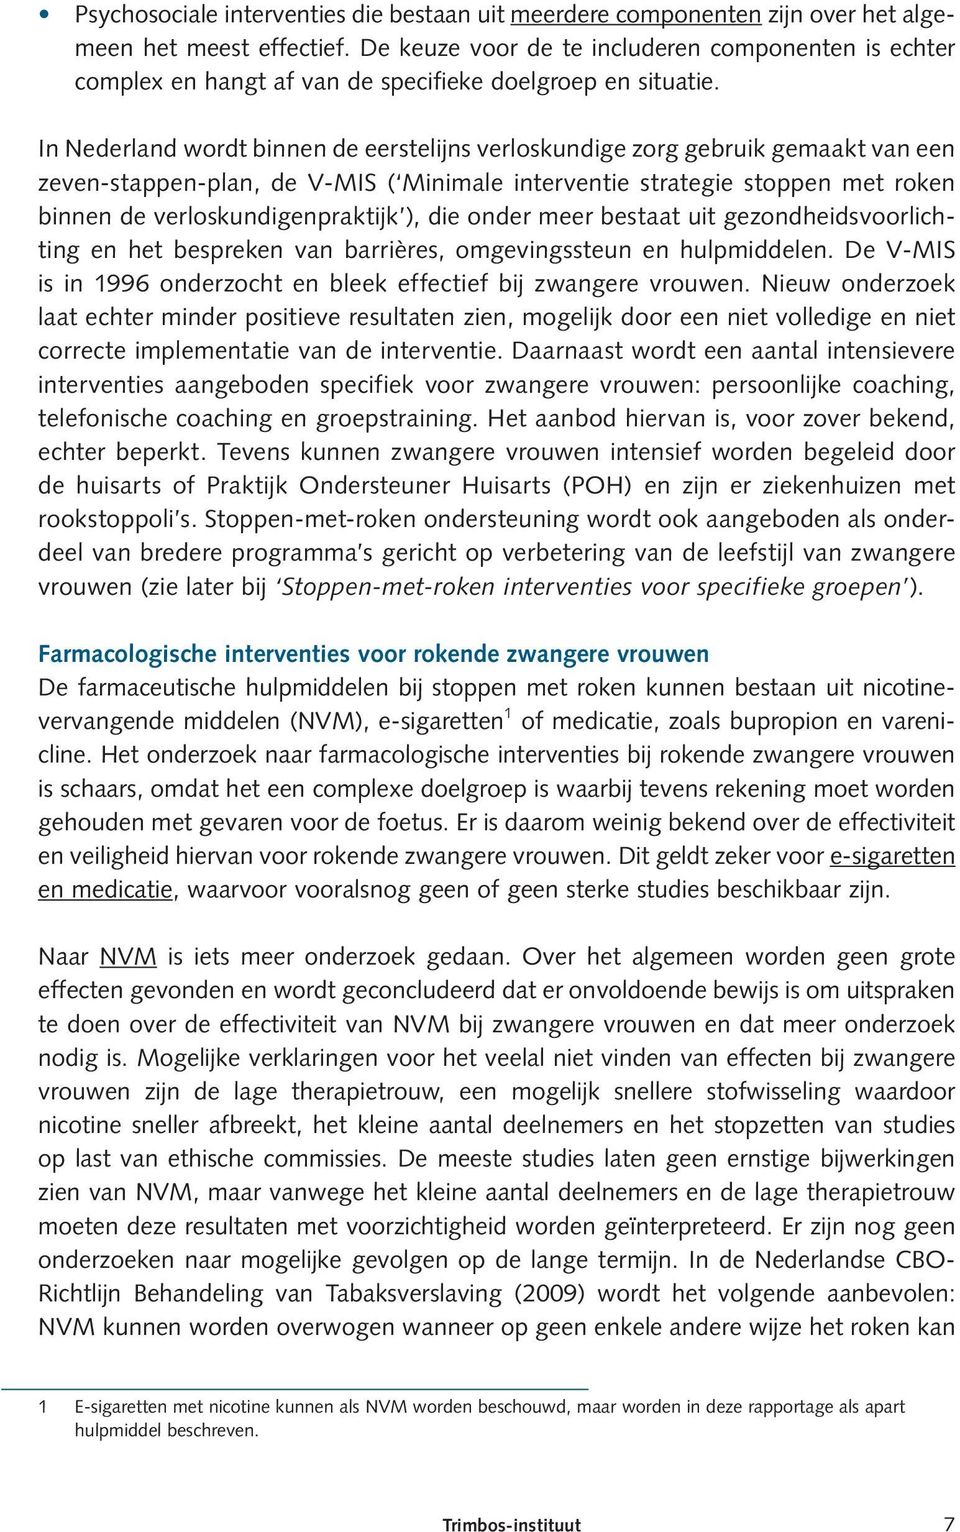 In Nederland wordt binnen de eerstelijns verloskundige zorg gebruik gemaakt van een zeven-stappen-plan, de V-MIS ( Minimale interventie strategie stoppen met roken binnen de verloskundigenpraktijk ),